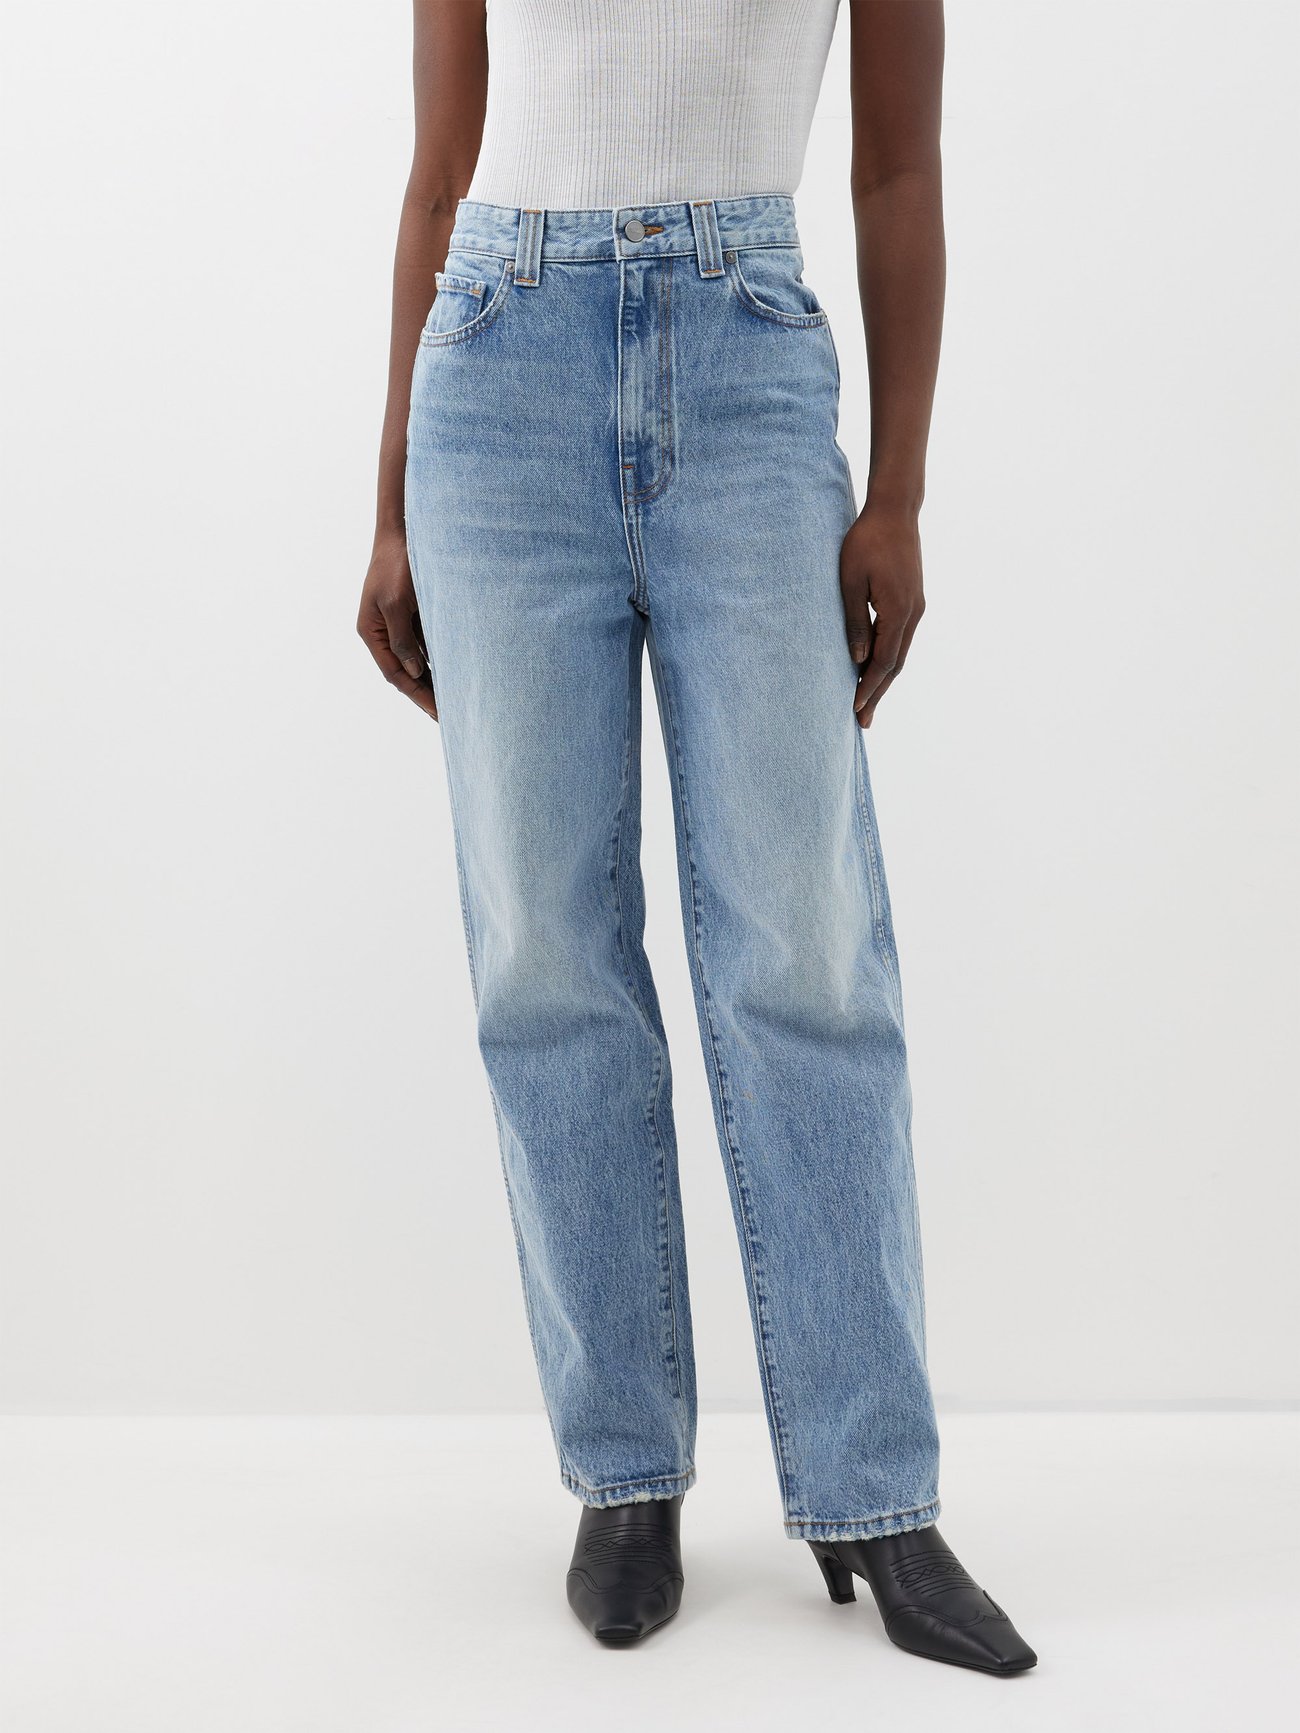 High Rise Full Length Straight Jeans In Light Mid Indigo Wash, Full Length  Straight Leg Jeans